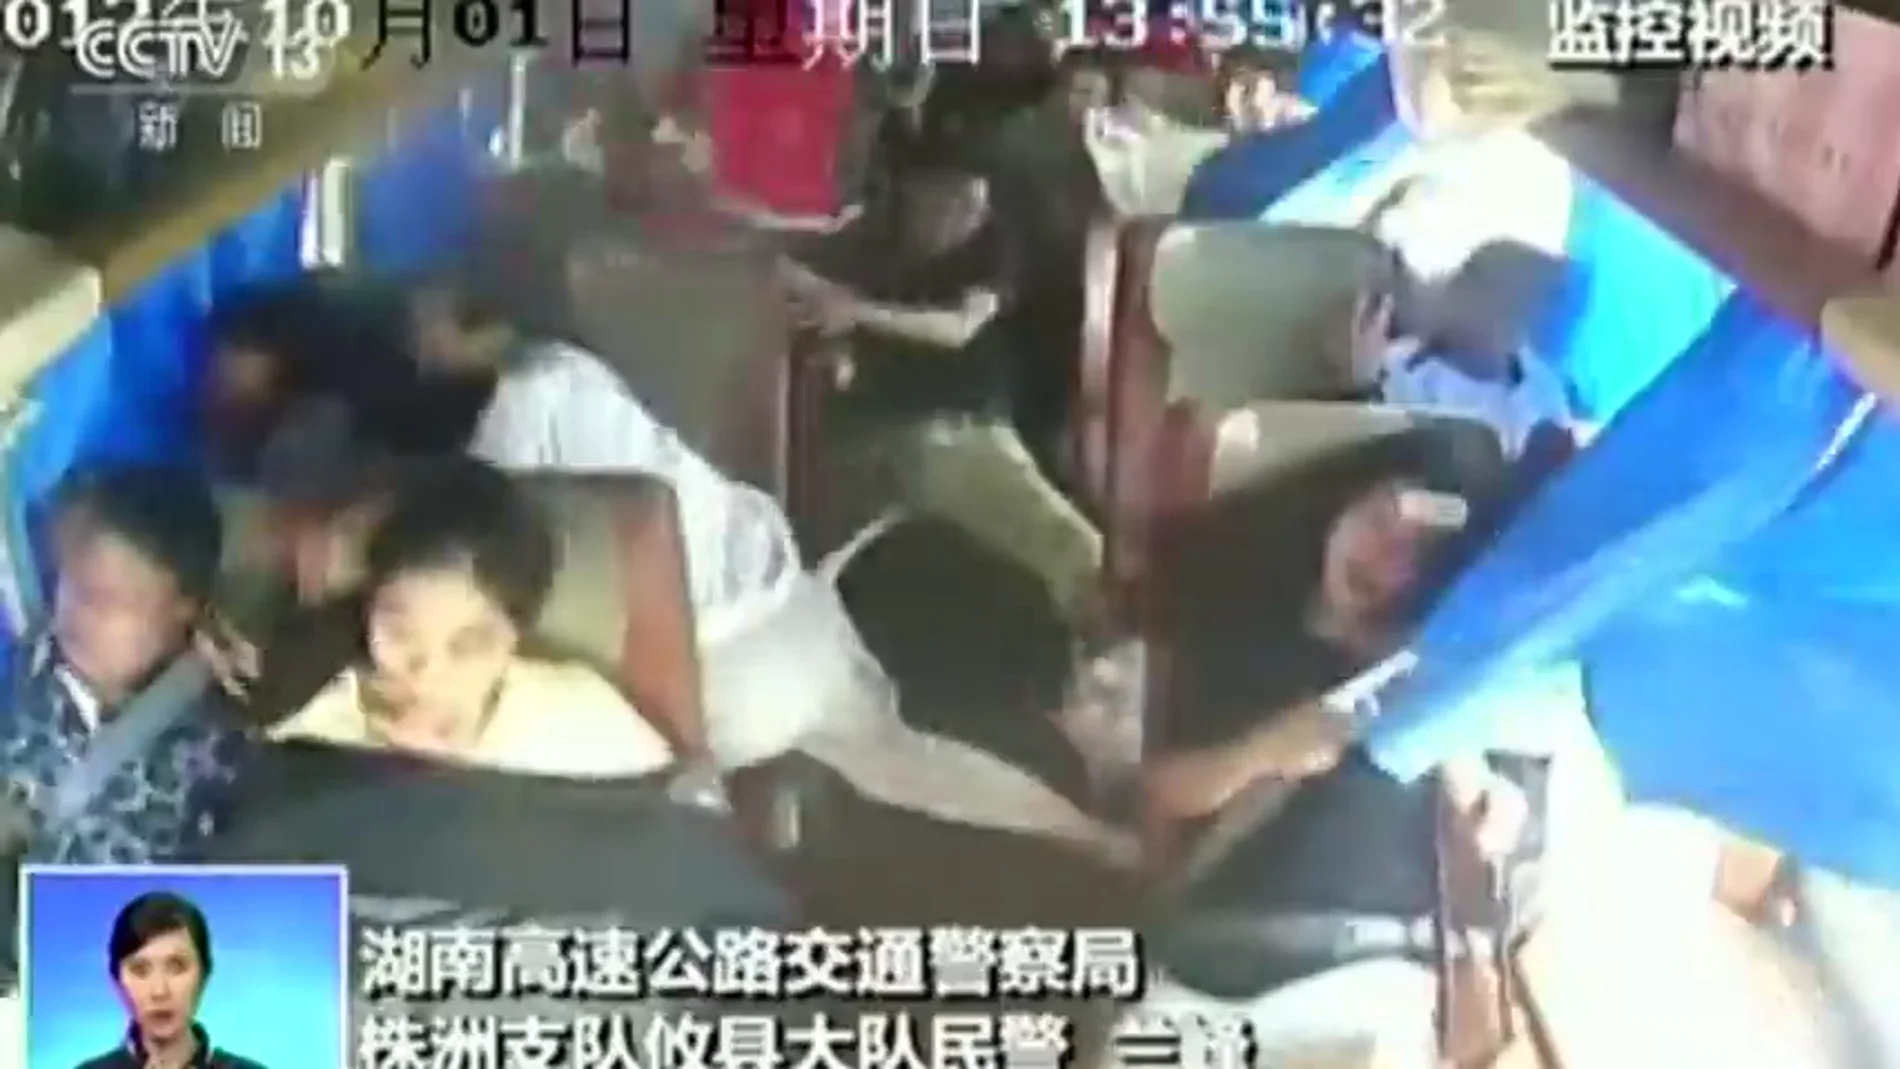 Impactantes imágenes captadas por una cámara de seguridad del momento en el que un autobús sufre un accidente en China